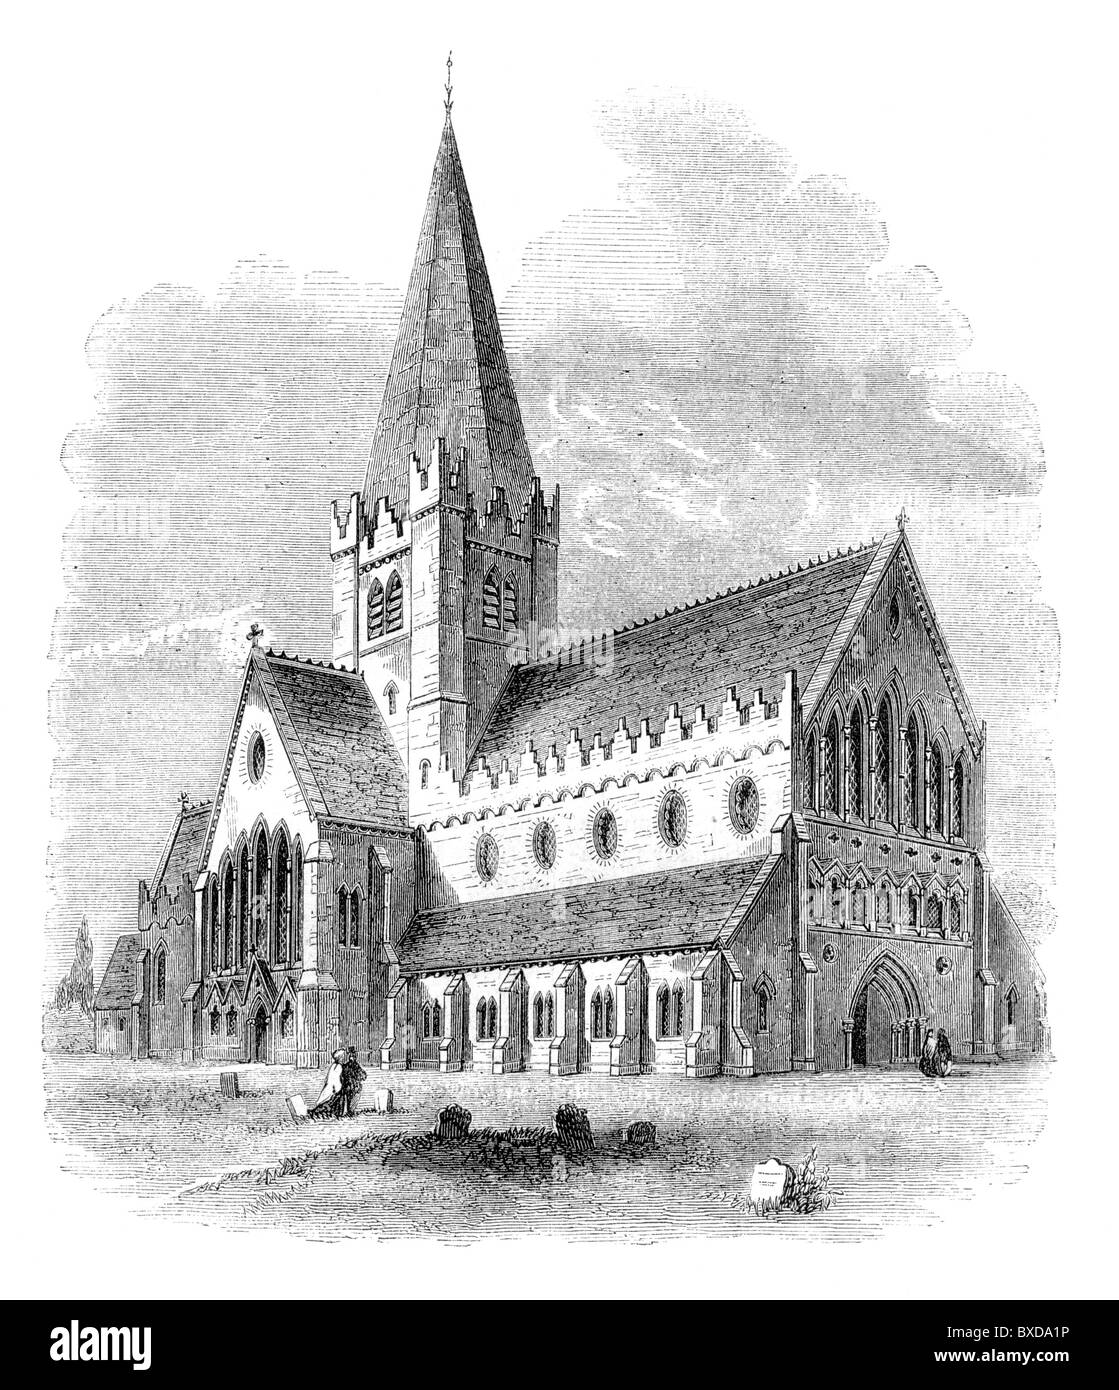 La Cathédrale St Mary, Tuam, comté de Galway, Irlande vers 1878 ; Architecte Sir Thomas Newenham Deane ; noir et blanc Illustration ; Banque D'Images